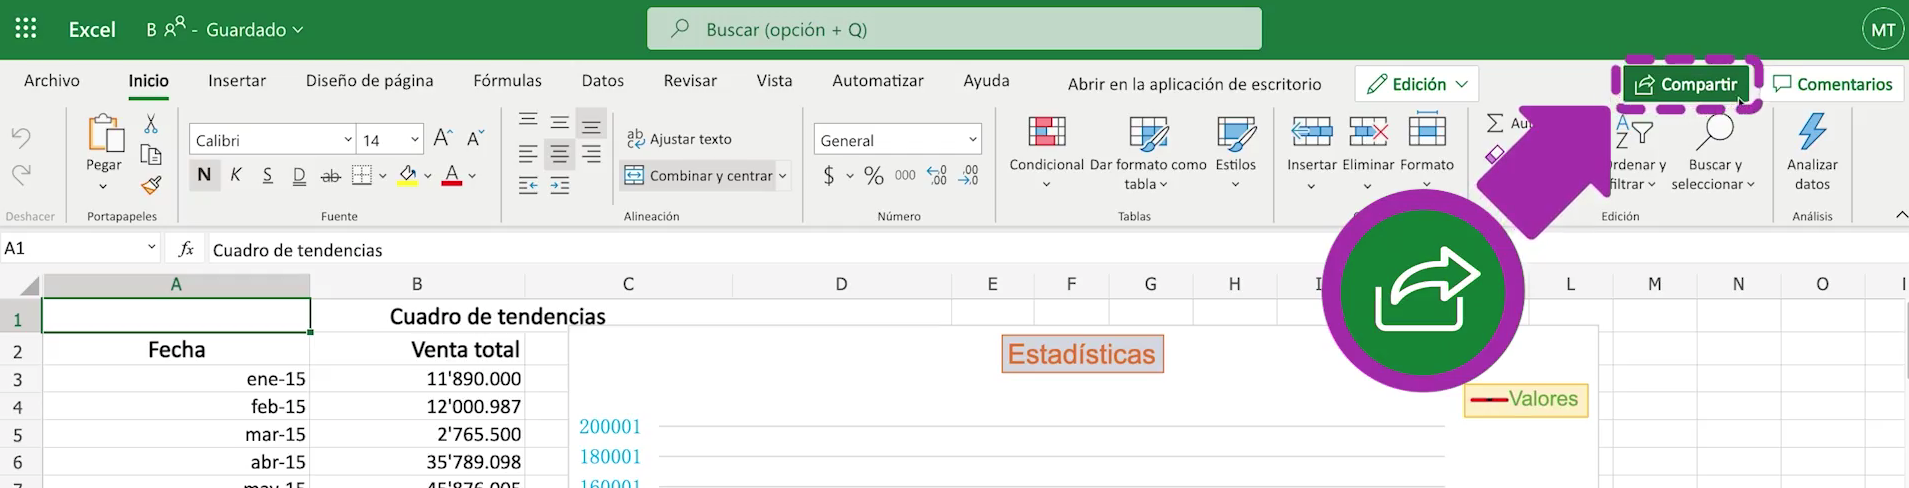 Excel 365: Cómo compartir un archivo en Excel 365